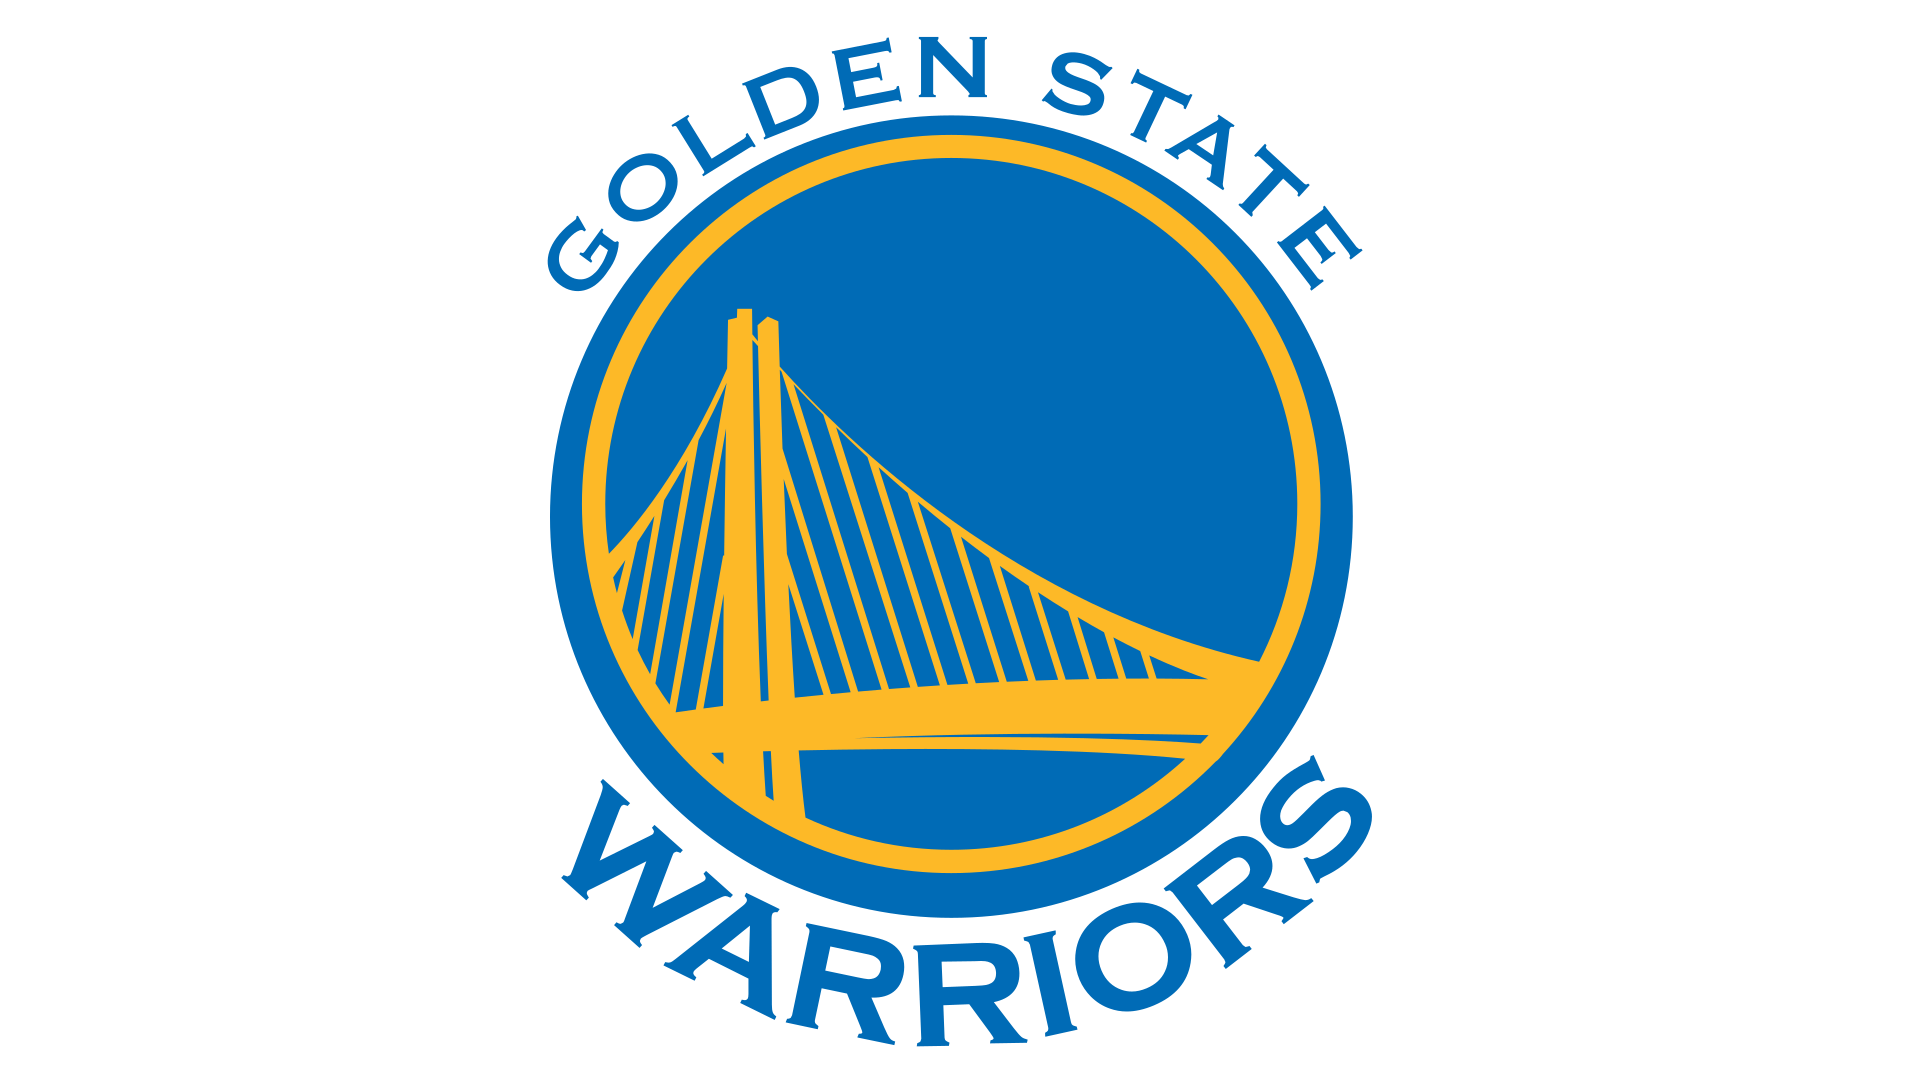 Warriors Basketball Logo - Golden State Warriors Logo, Golden State Warriors Symbol, Meaning ...